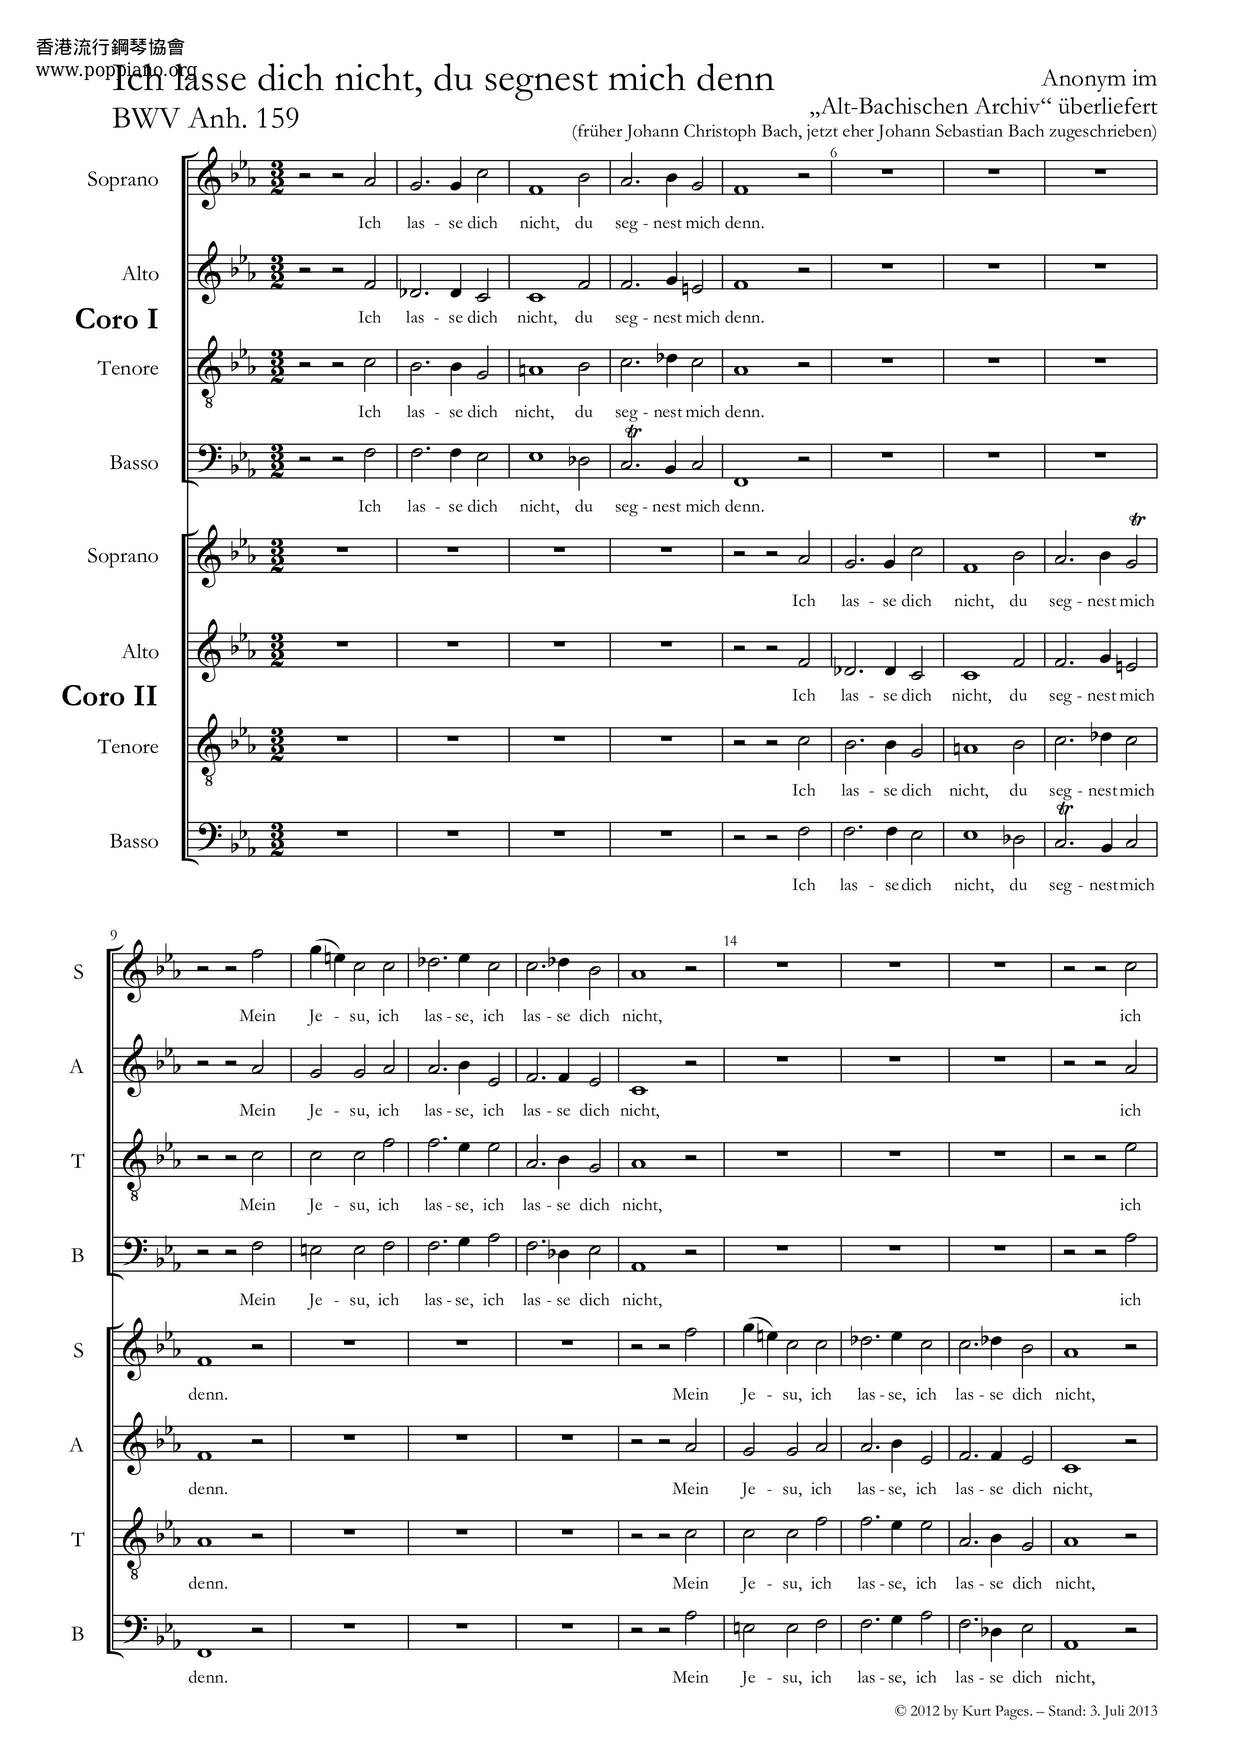 Ich Lasse Dich Nicht, BWV Anh. 159 Score